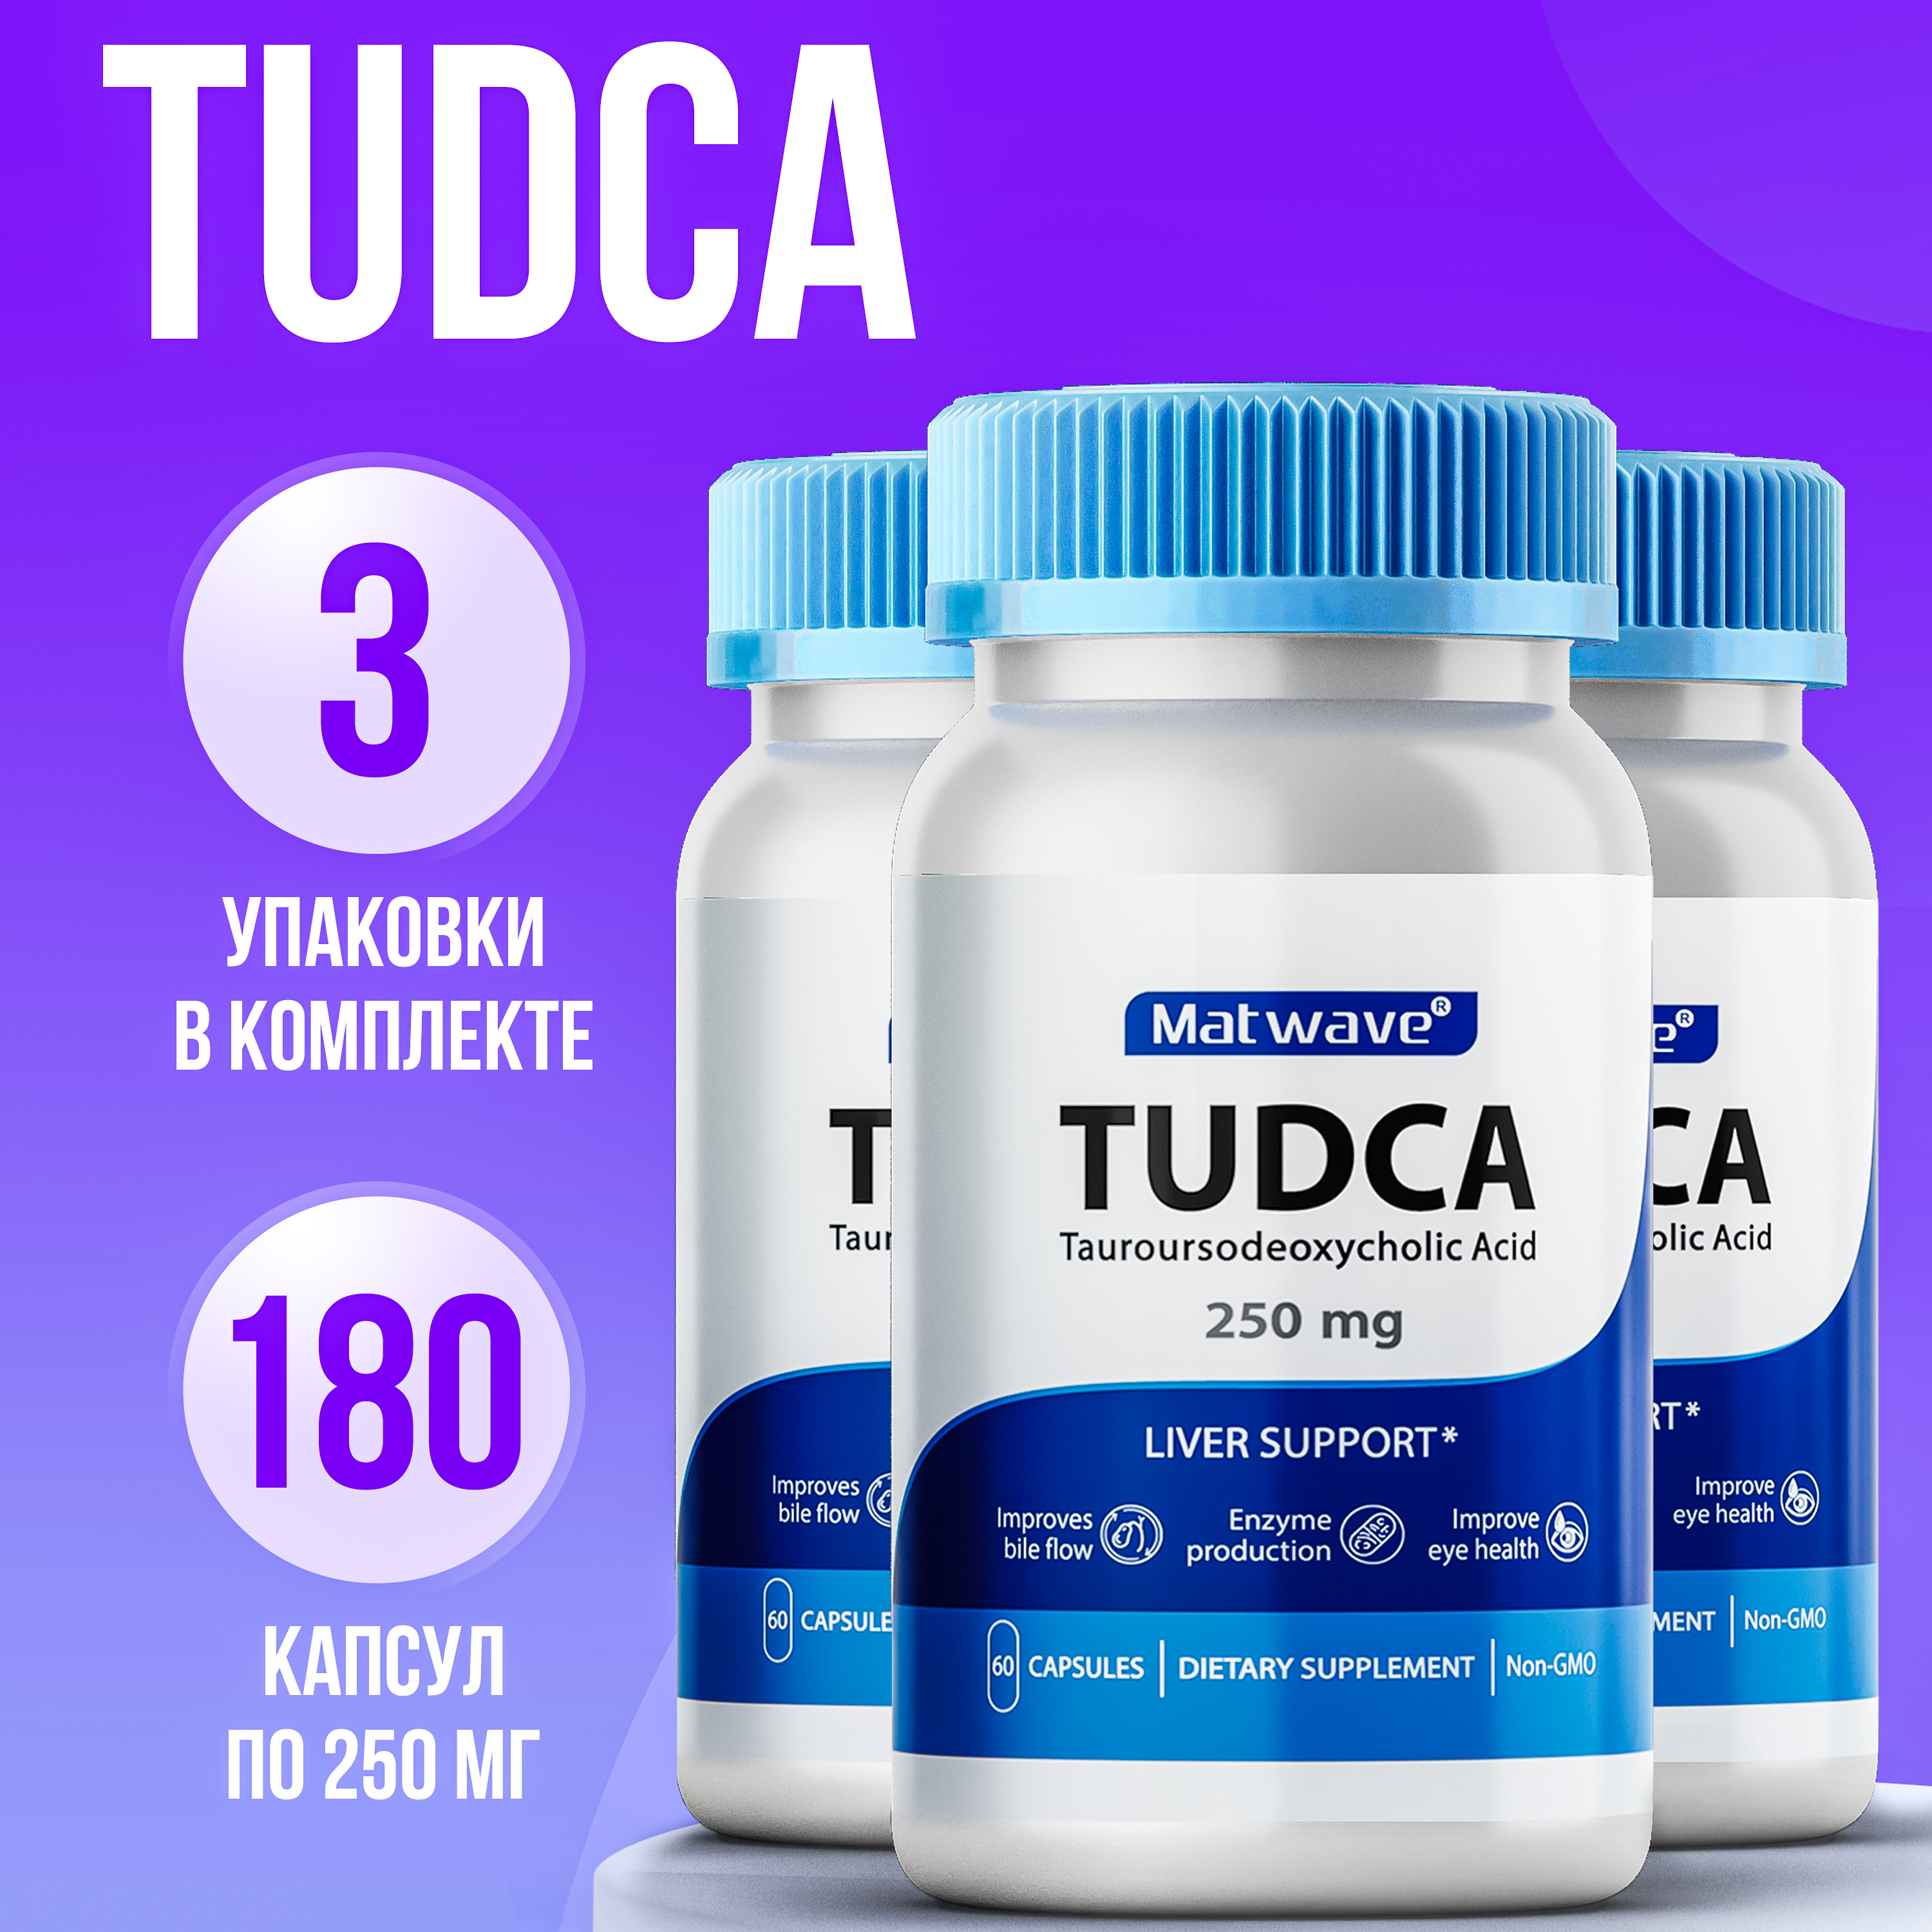 Биологически активная добавка Matwave TUDCA Тудка 250 мг, 60 капсул, 3 упаковки